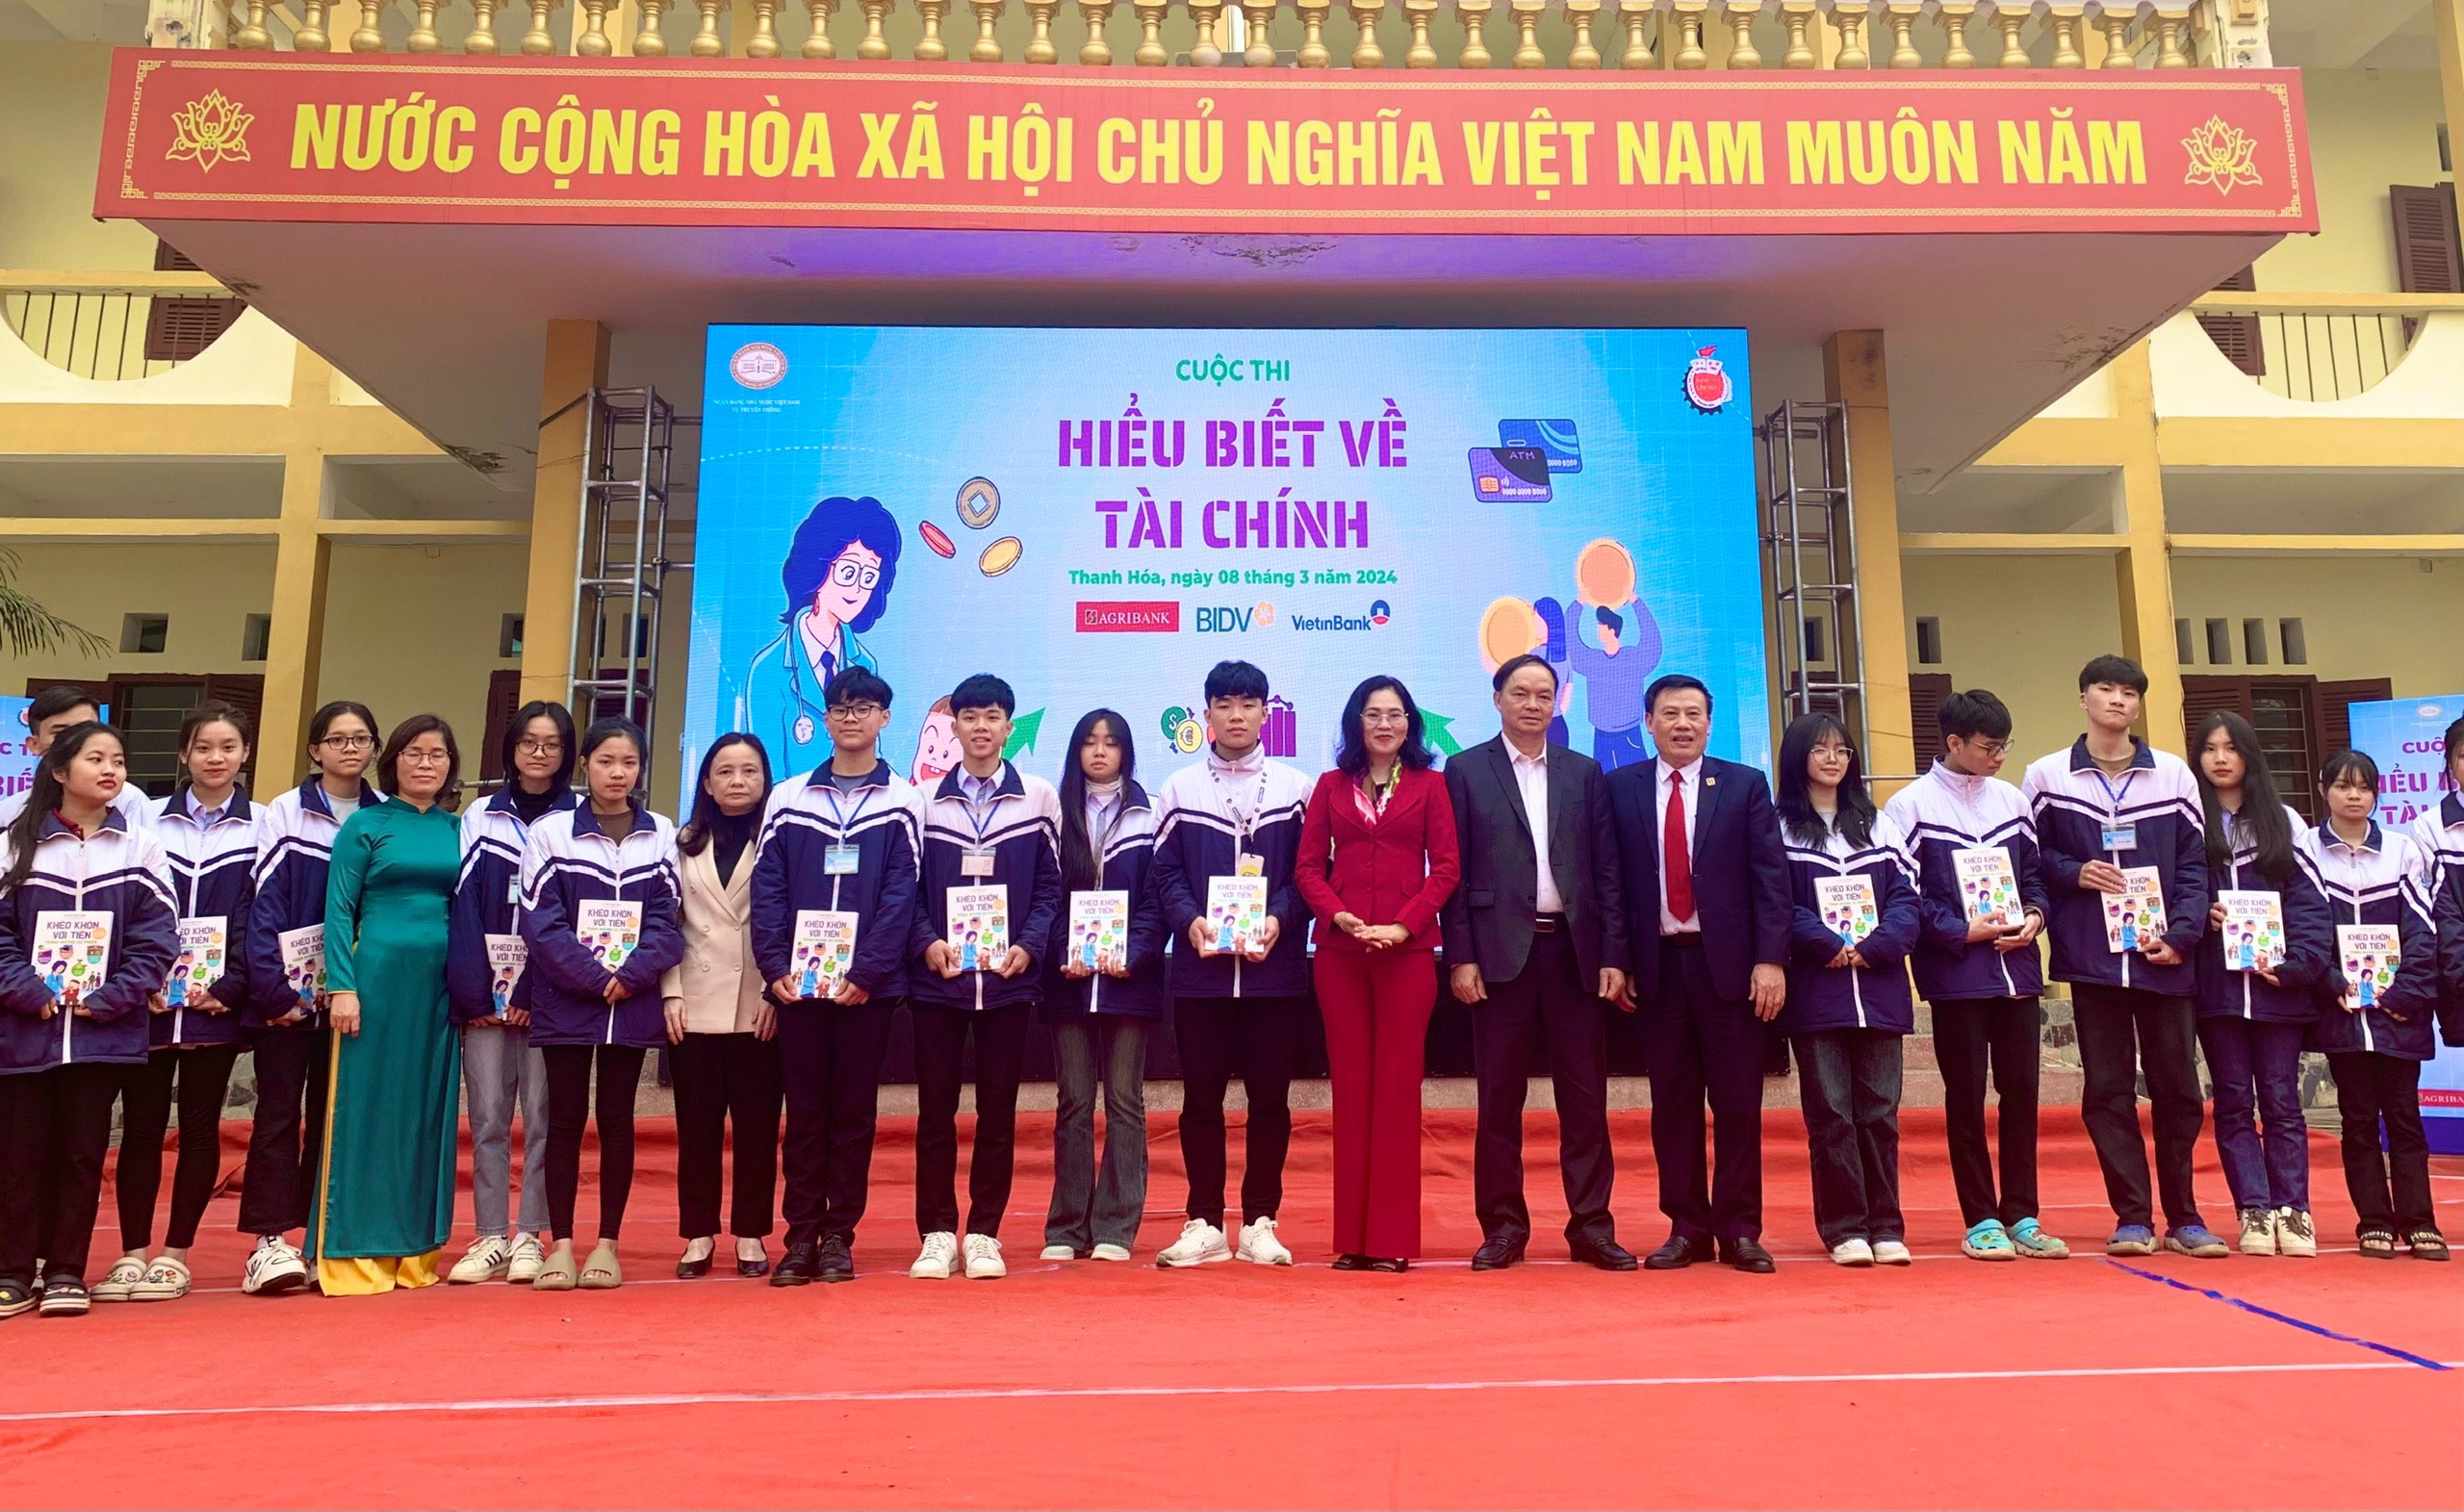 Cuộc thi Hiểu biết về tài chính được tổ chức cho gần 1800 học sinh trung học tại Thanh Hóa- Ảnh 3.